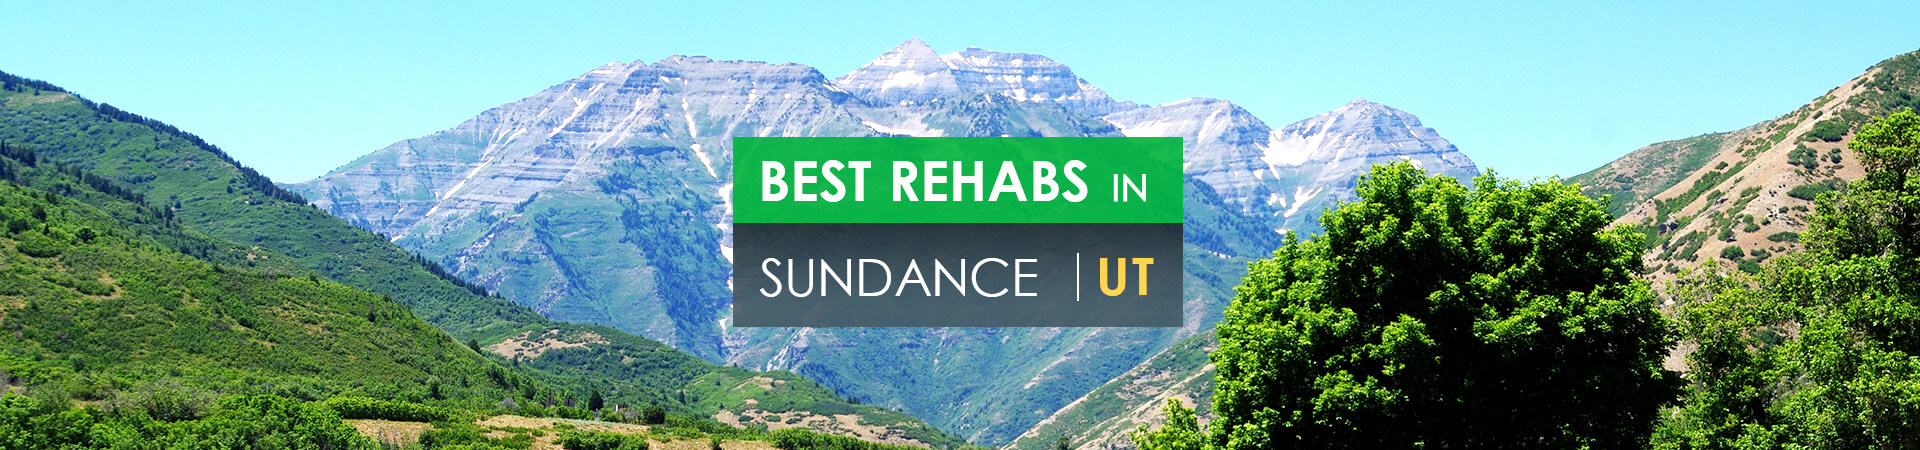 Best rehabs in Sundance, UT